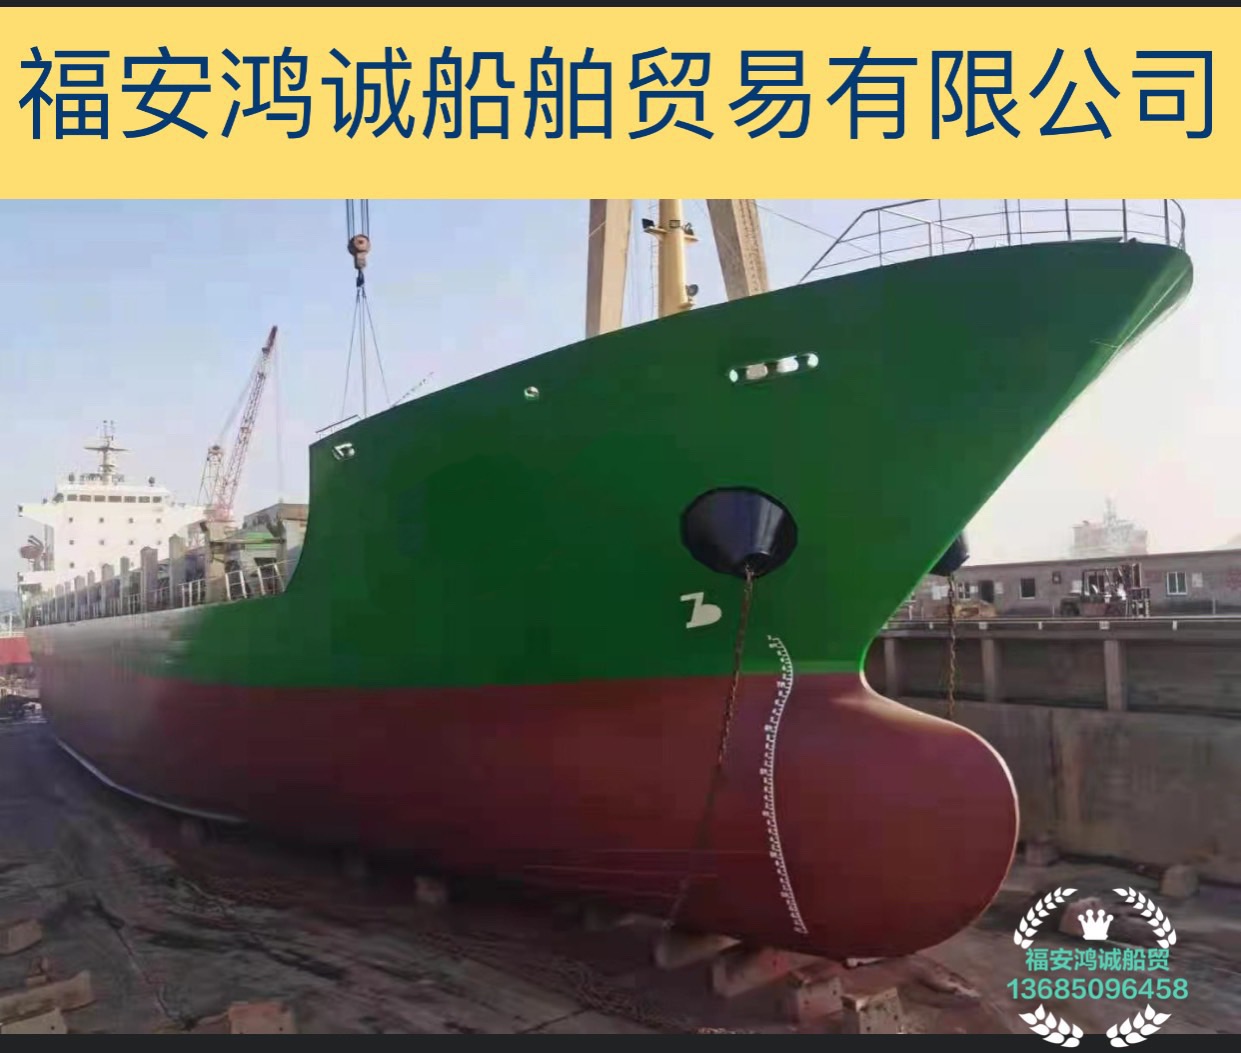 出售2009年造10500吨多用途船